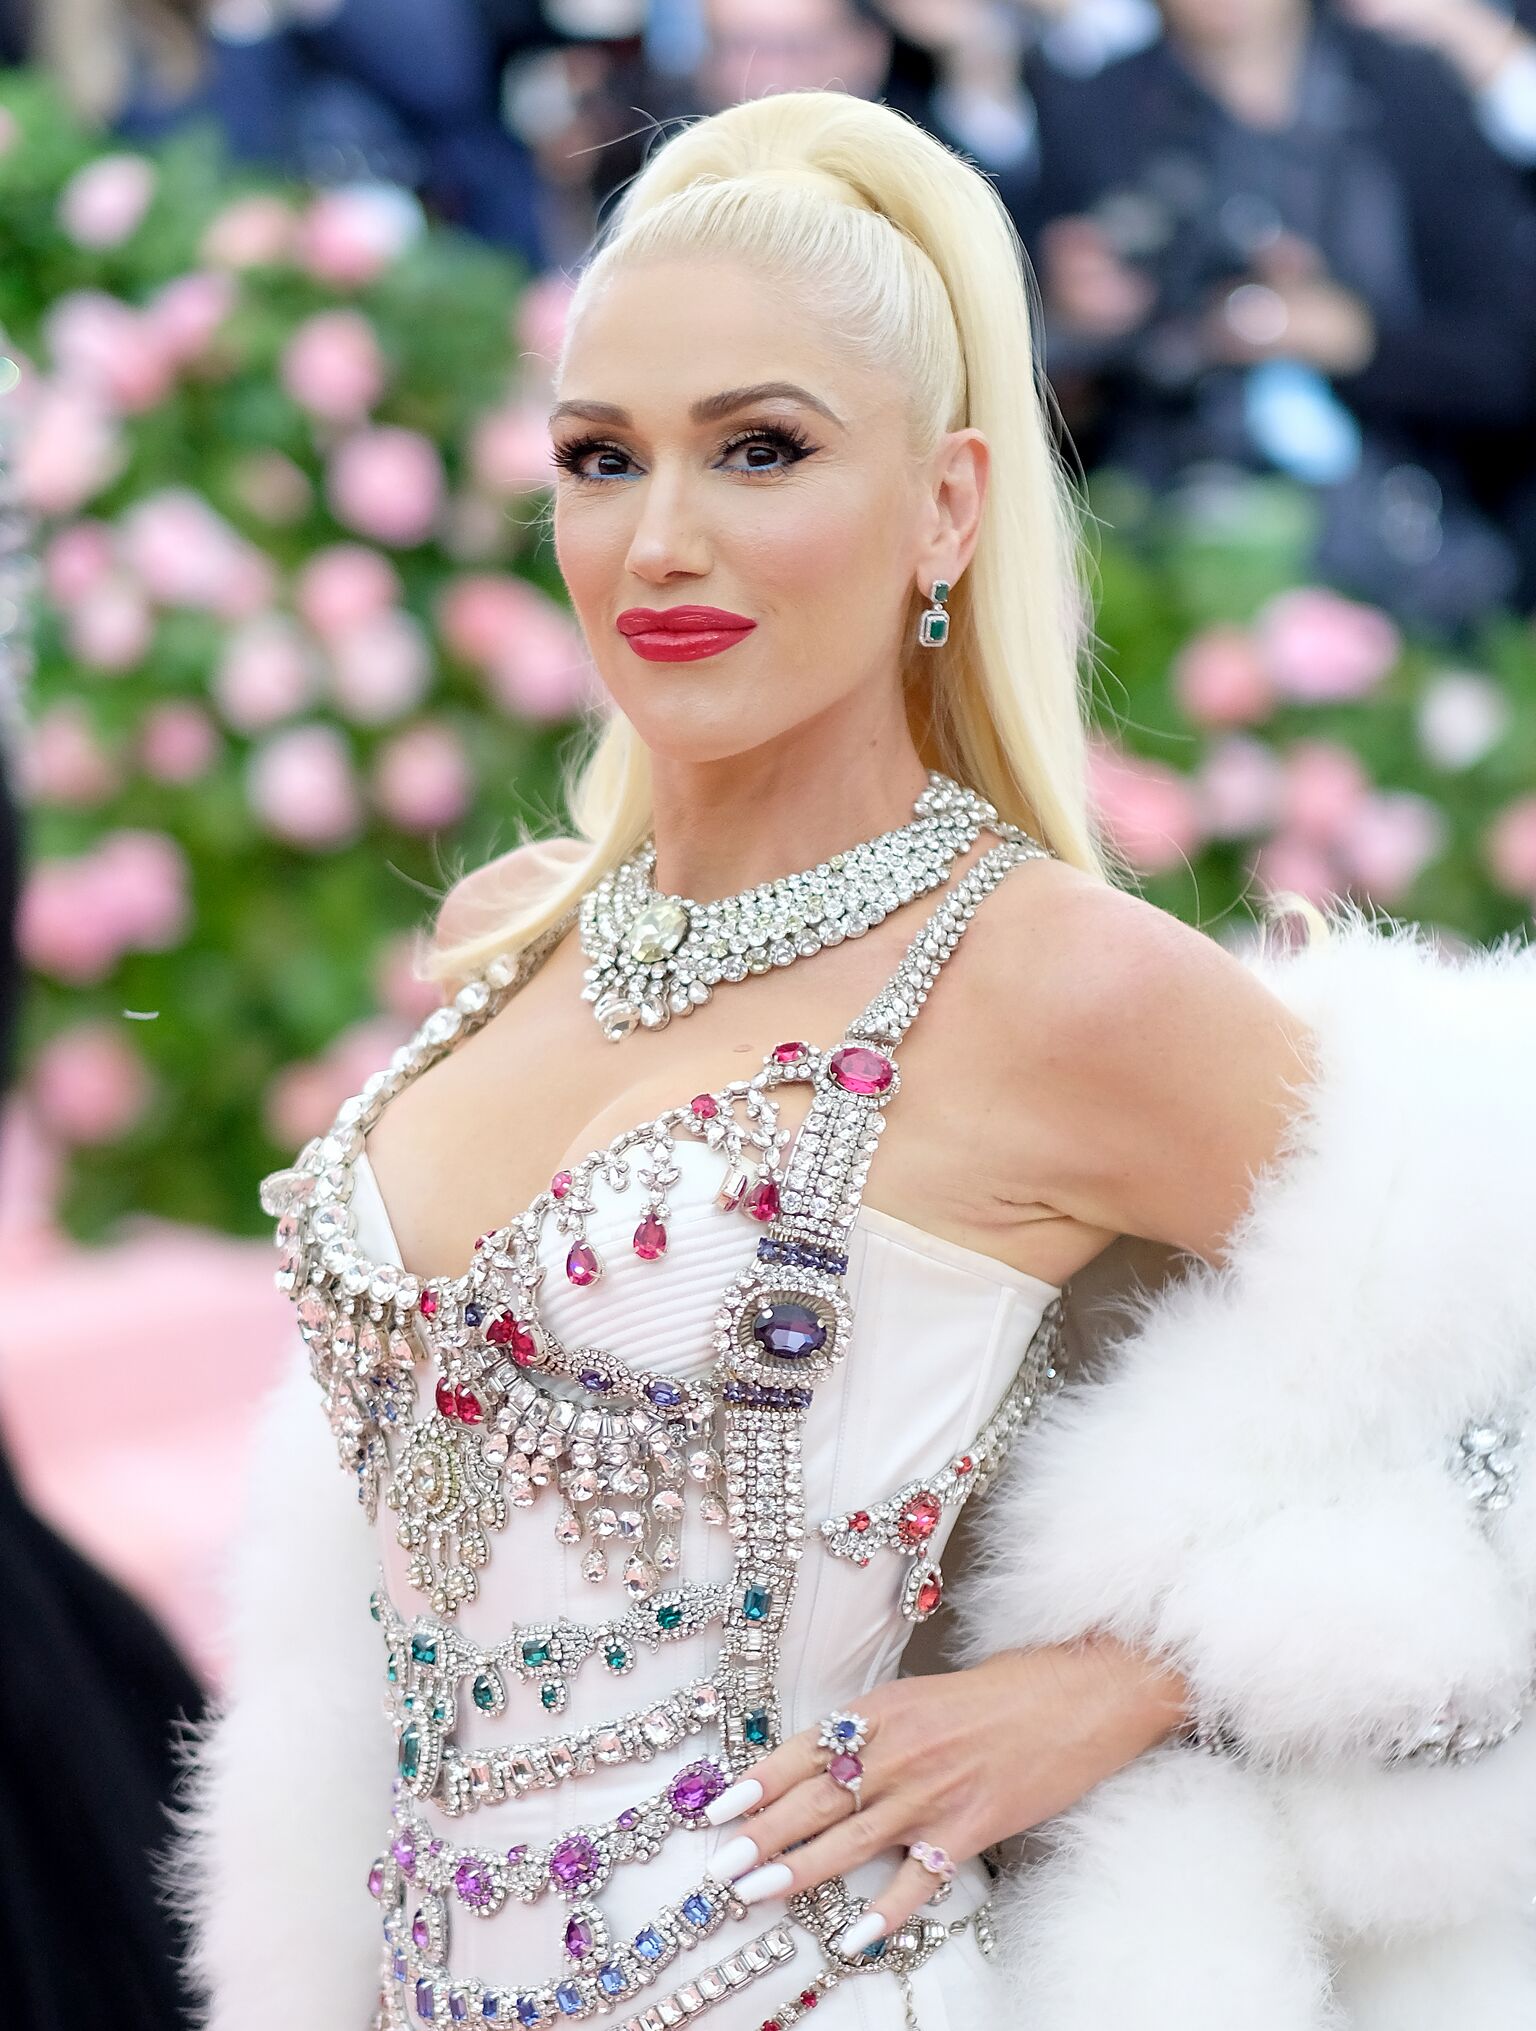 Gwen Stefani participe au camp de célébration du Gala du Met 2019 : Notes sur la mode au Metropolitan Museum of Art le 15 mai 2019 | Photo : Getty Images